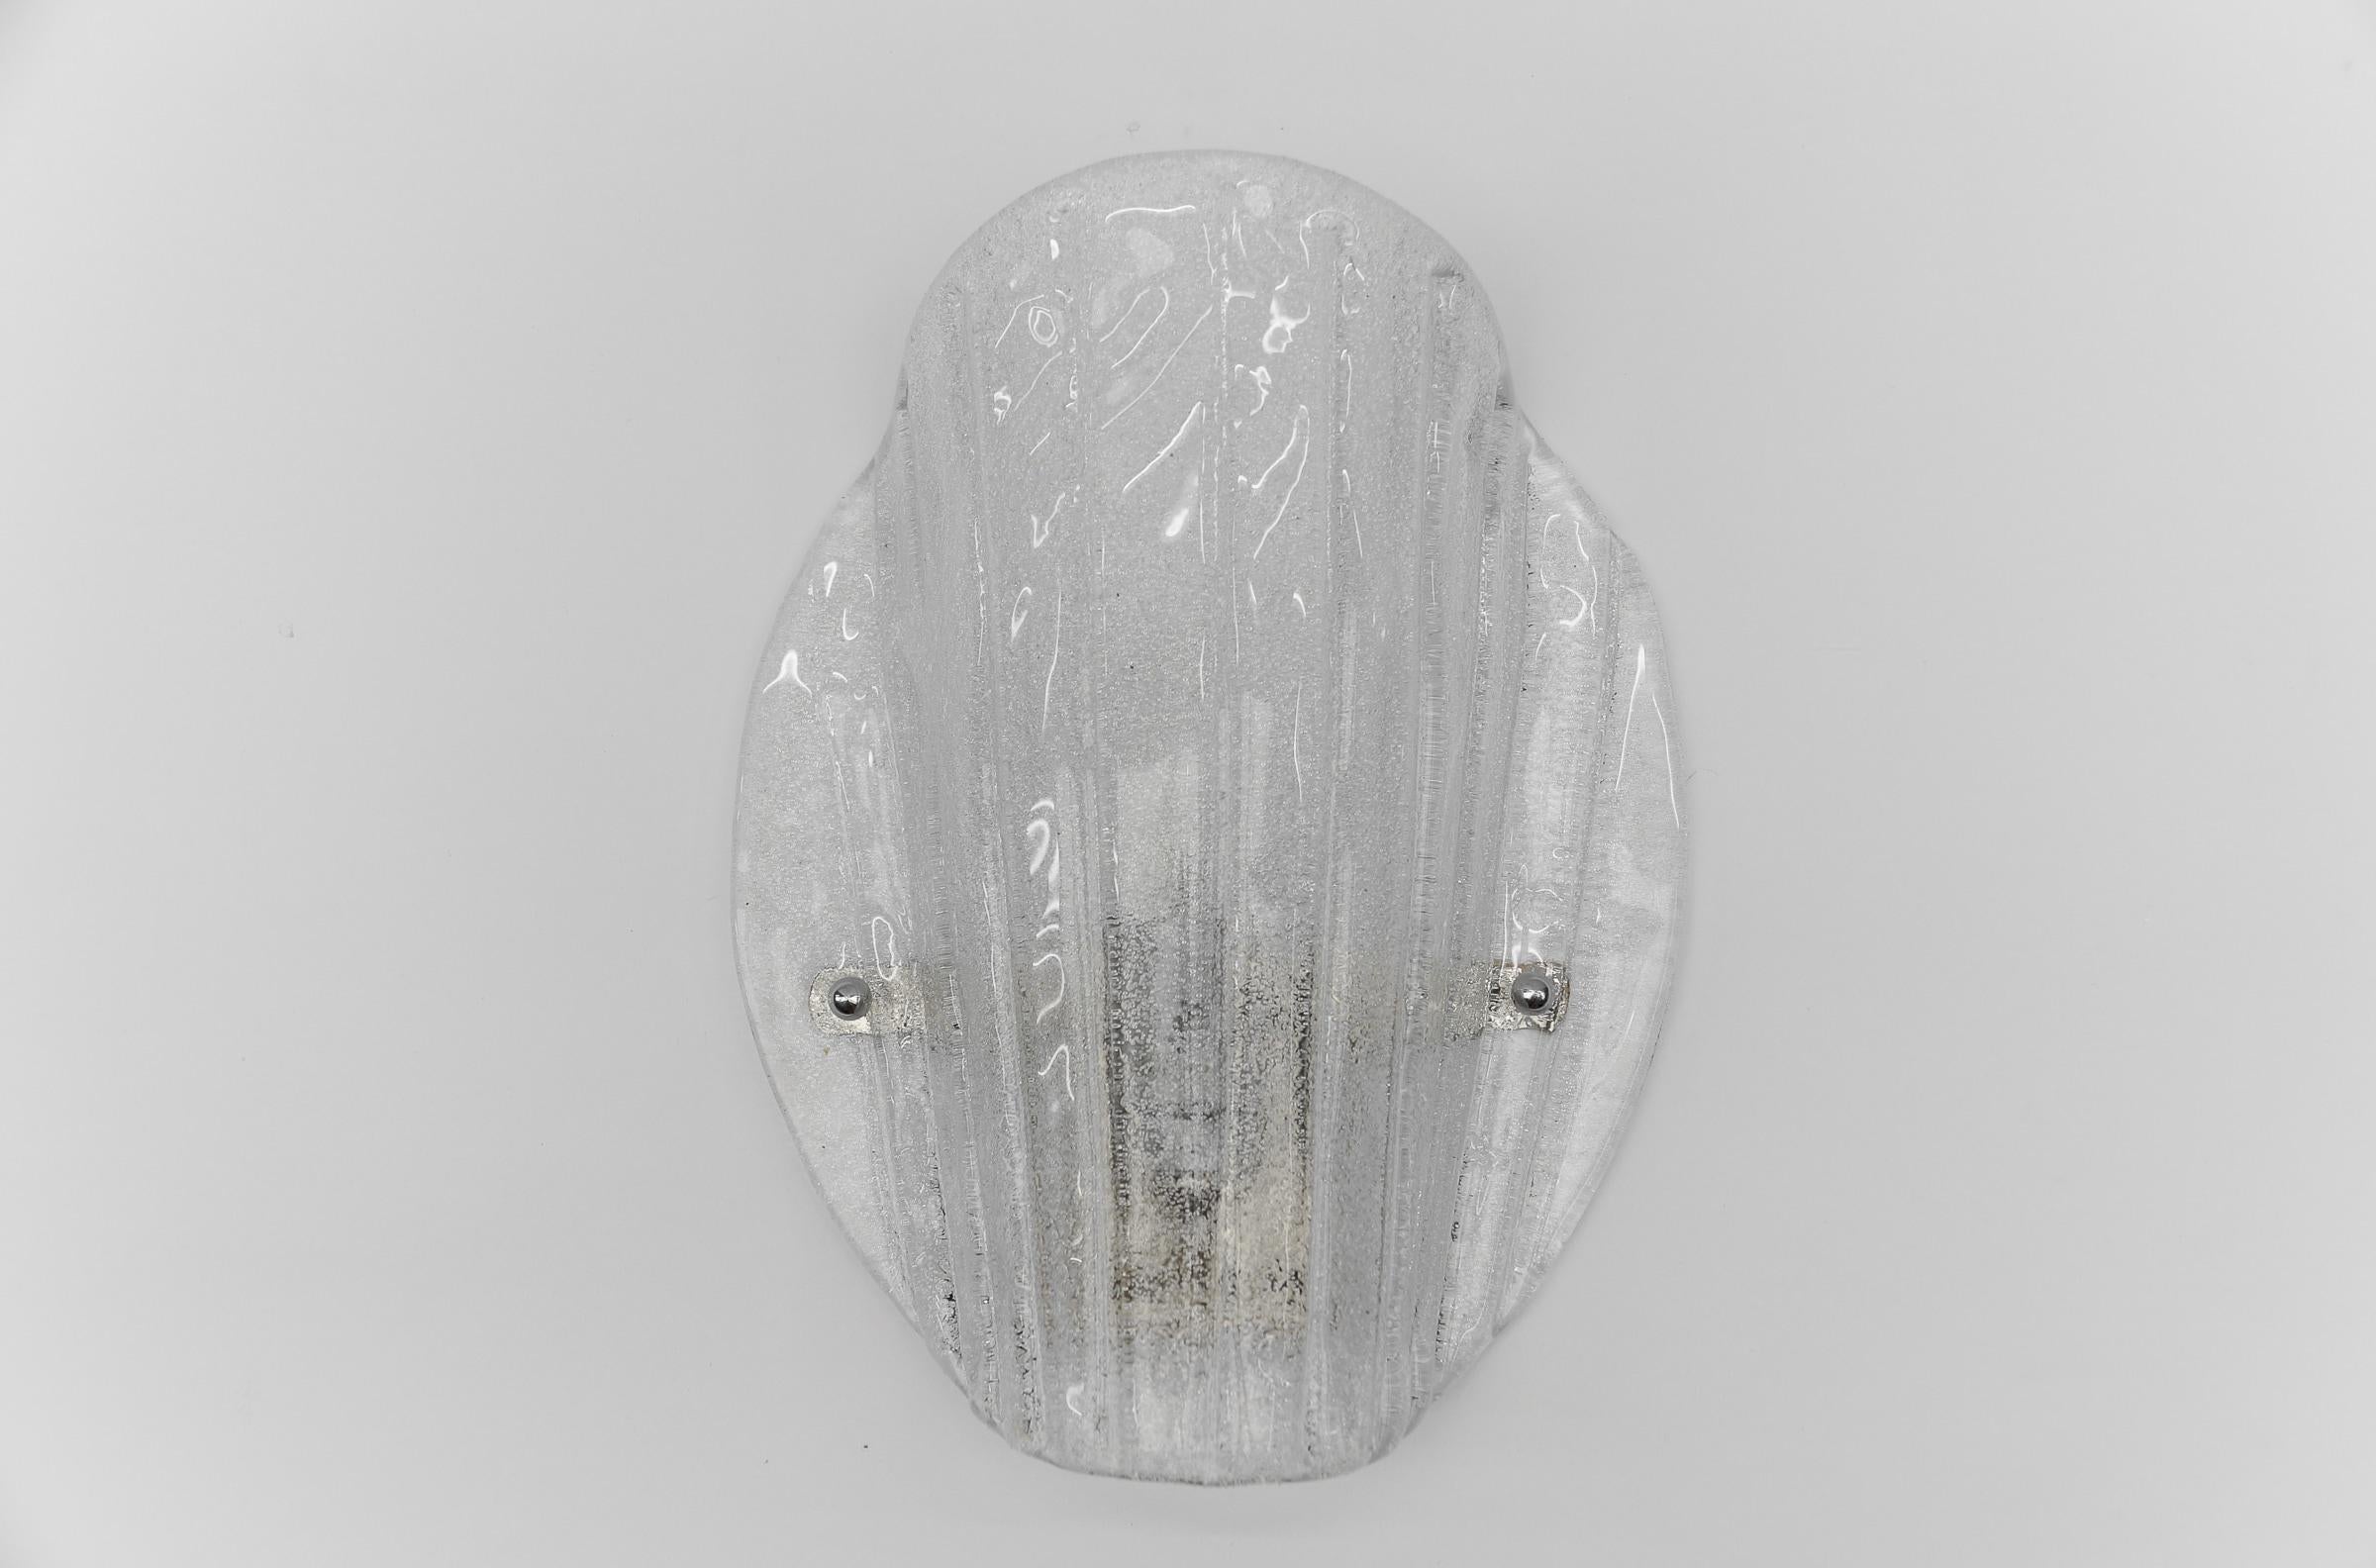 1 von 3 Murano Glas Wandleuchter  Wandleuchte, 1960er Jahre

Die Wandlampe wird mit 1 x E14 / E15 Edison Schraubfassung geliefert, ist verkabelt und in funktionstüchtigem Zustand. Es läuft sowohl mit 110/230 Volt. Lieferung ohne Glühbirne.

Unsere